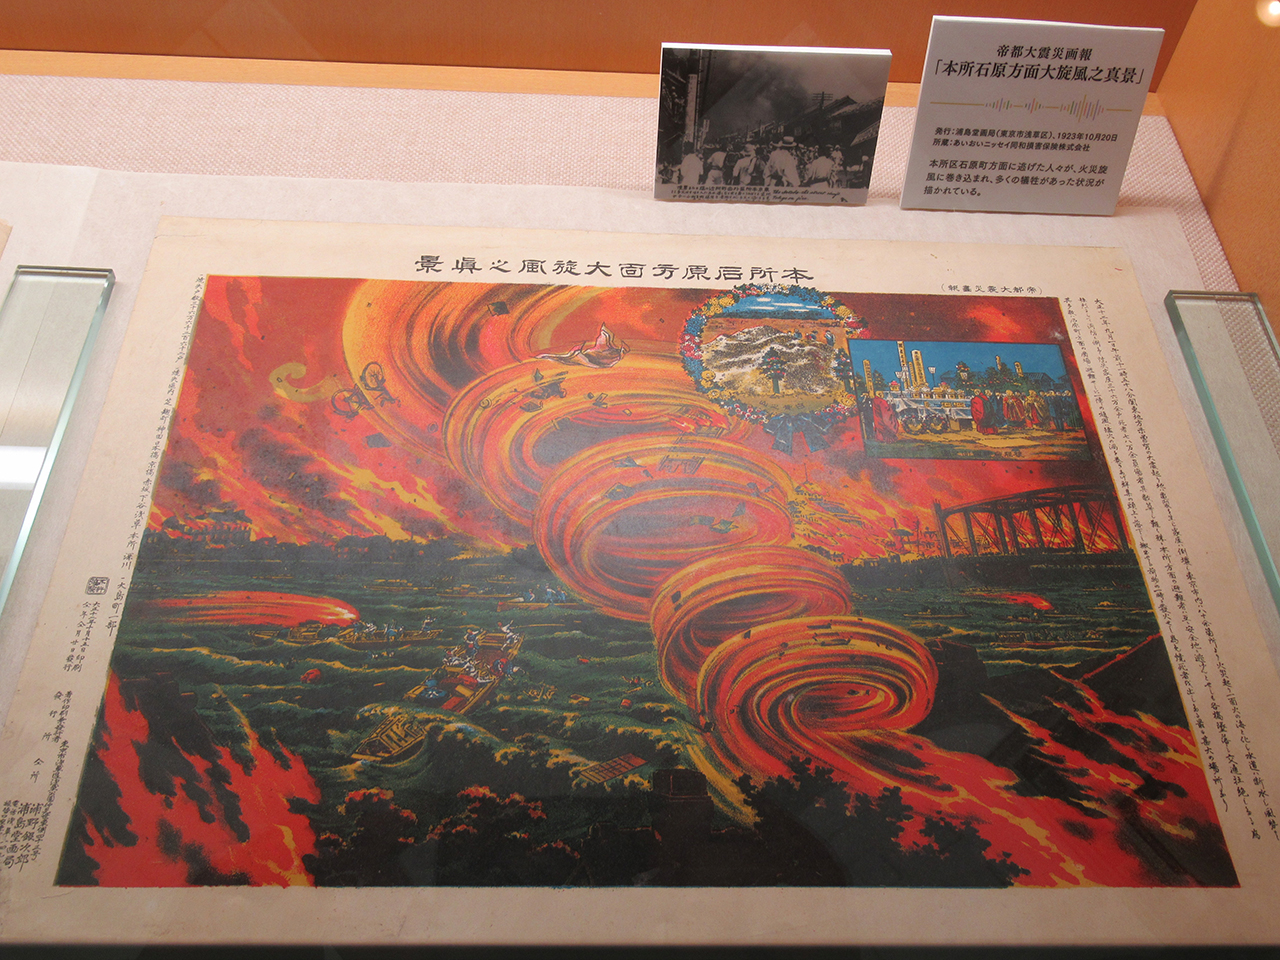 『帝都大震災画報』より「本所石原方面大旋風之真景」1923（大正12）年10月20日発行　右上の写真は、東京本所区外出町付近の猛々たる黒煙をとらえた震災後間もなくの光景